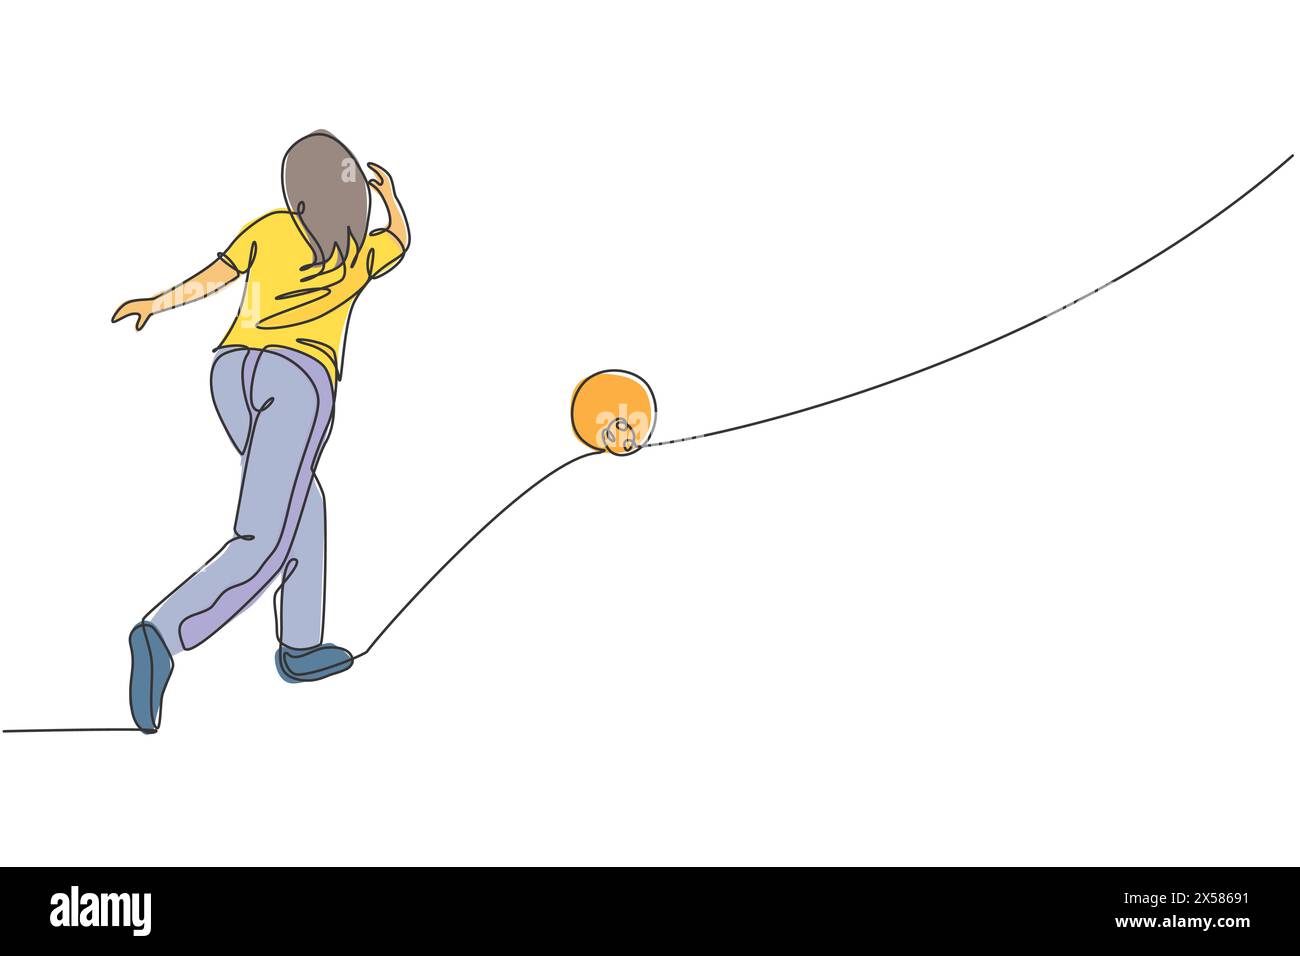 Eine einzelne Linie zeichnet junge talentierte Bowlingspielerin Frau werfen Ball, um Bowlingnadeln zu schlagen grafische Vektor-Illustration. Gesunde Menschen Lebensstil und s Stock Vektor